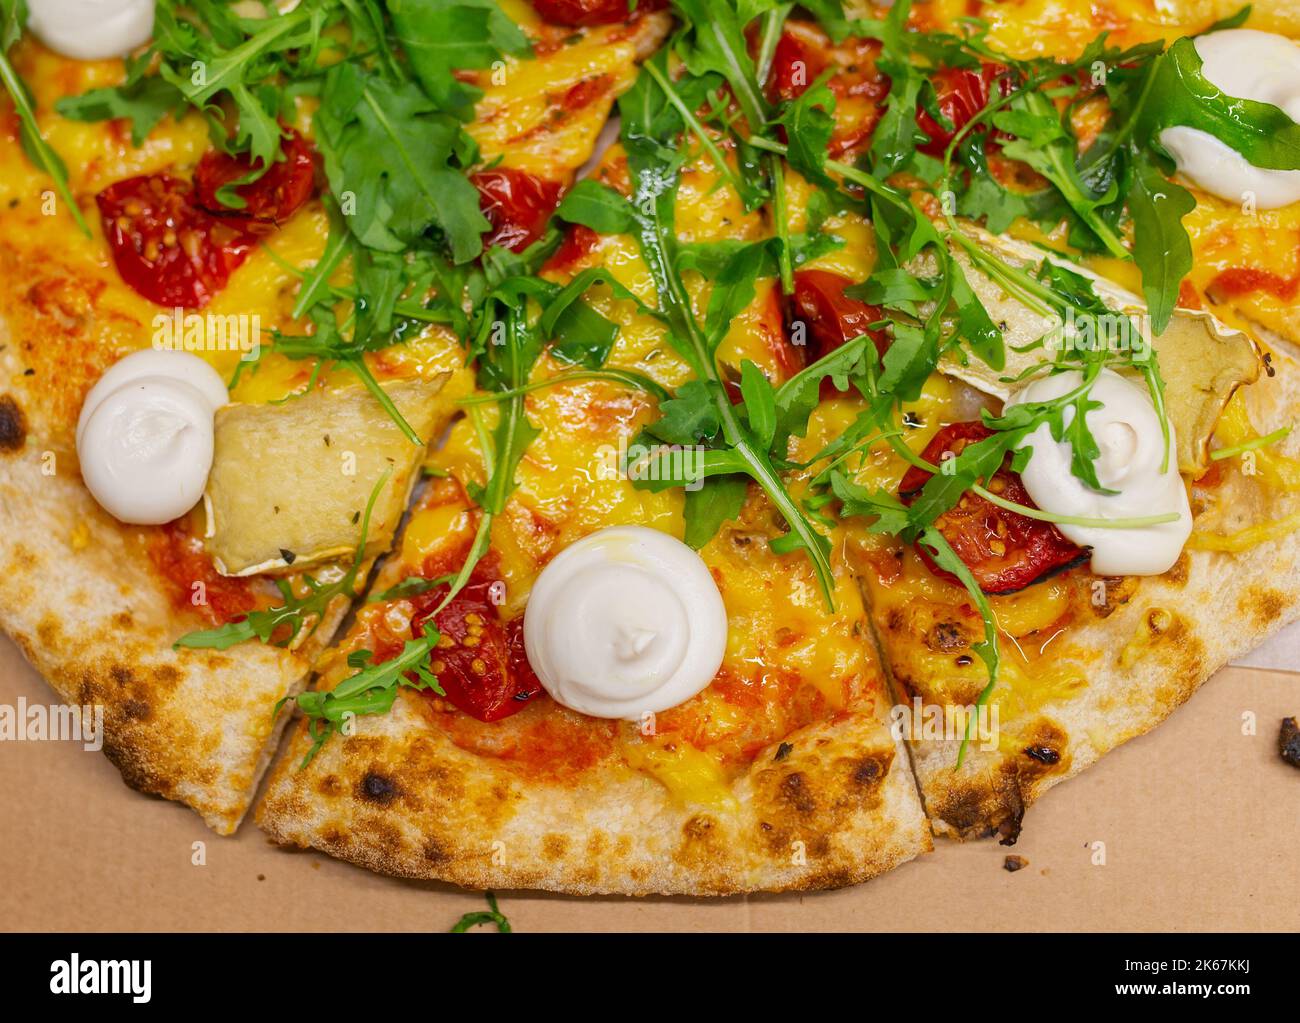 Rucola o rucola diversi tipi di formaggio pizza italiana Foto Stock